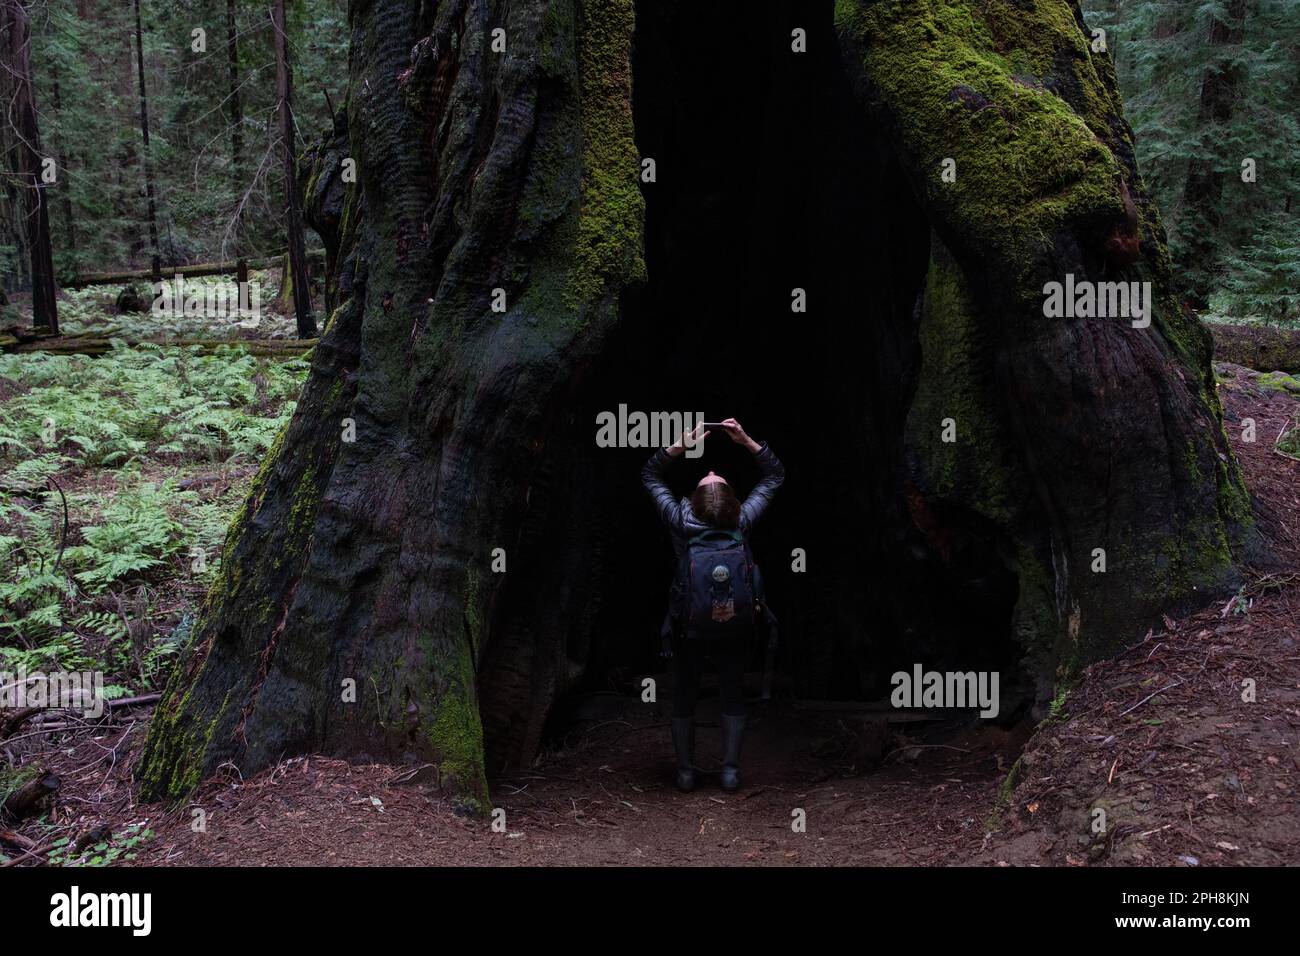 Eine Wanderer, die im Fuße eines Küstenmammutbaums, Sequoia sempervirens, Baumstamm steht und nach oben schaut, ist im Vergleich dazu sehr klein. Stockfoto